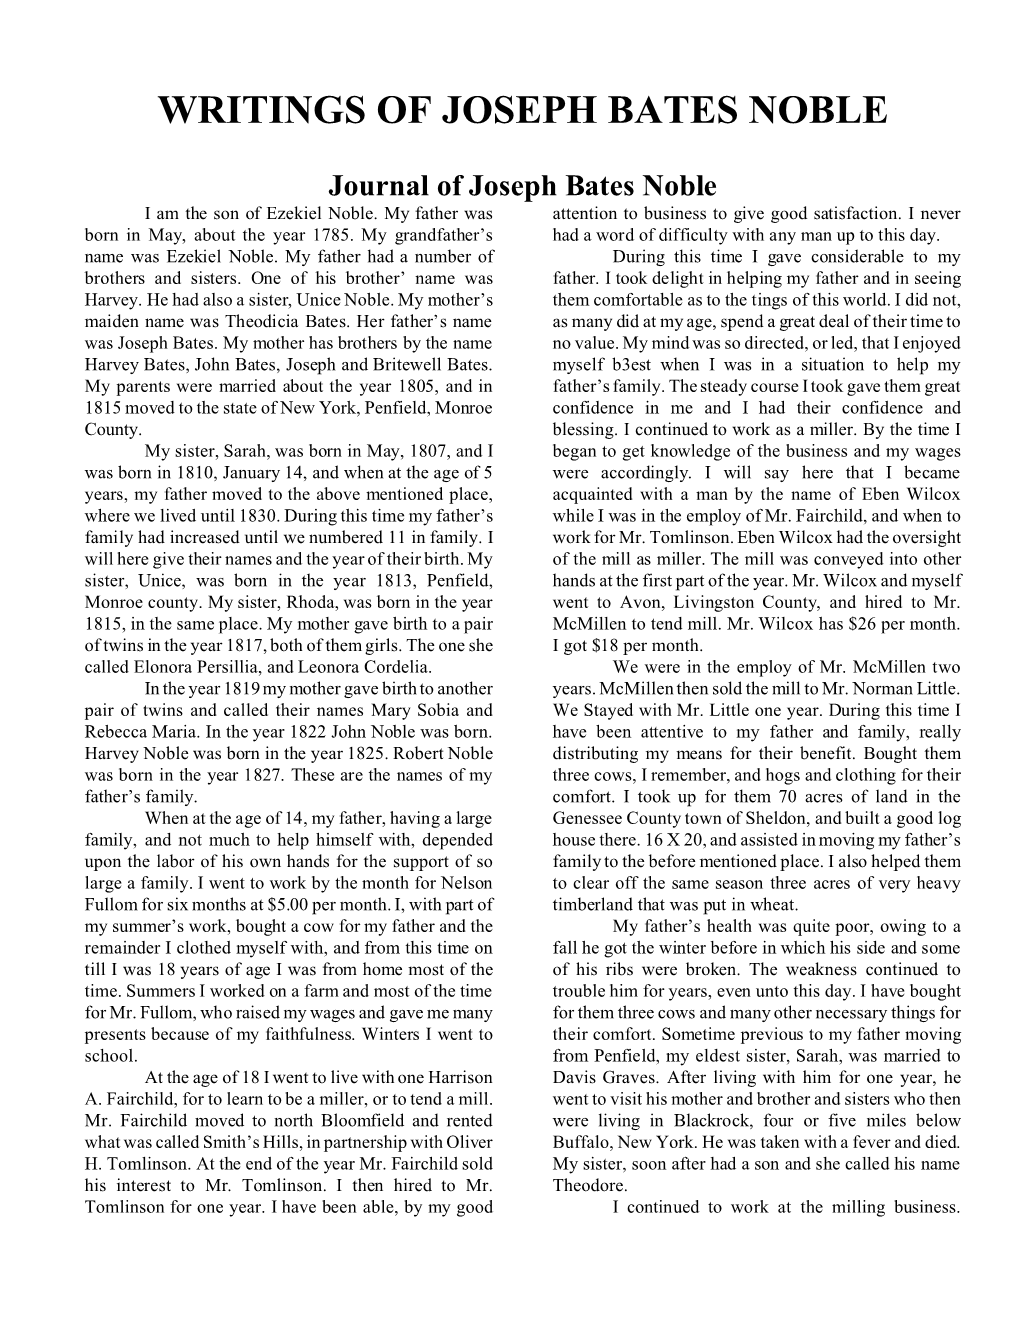 Writings of Joseph Bates Noble